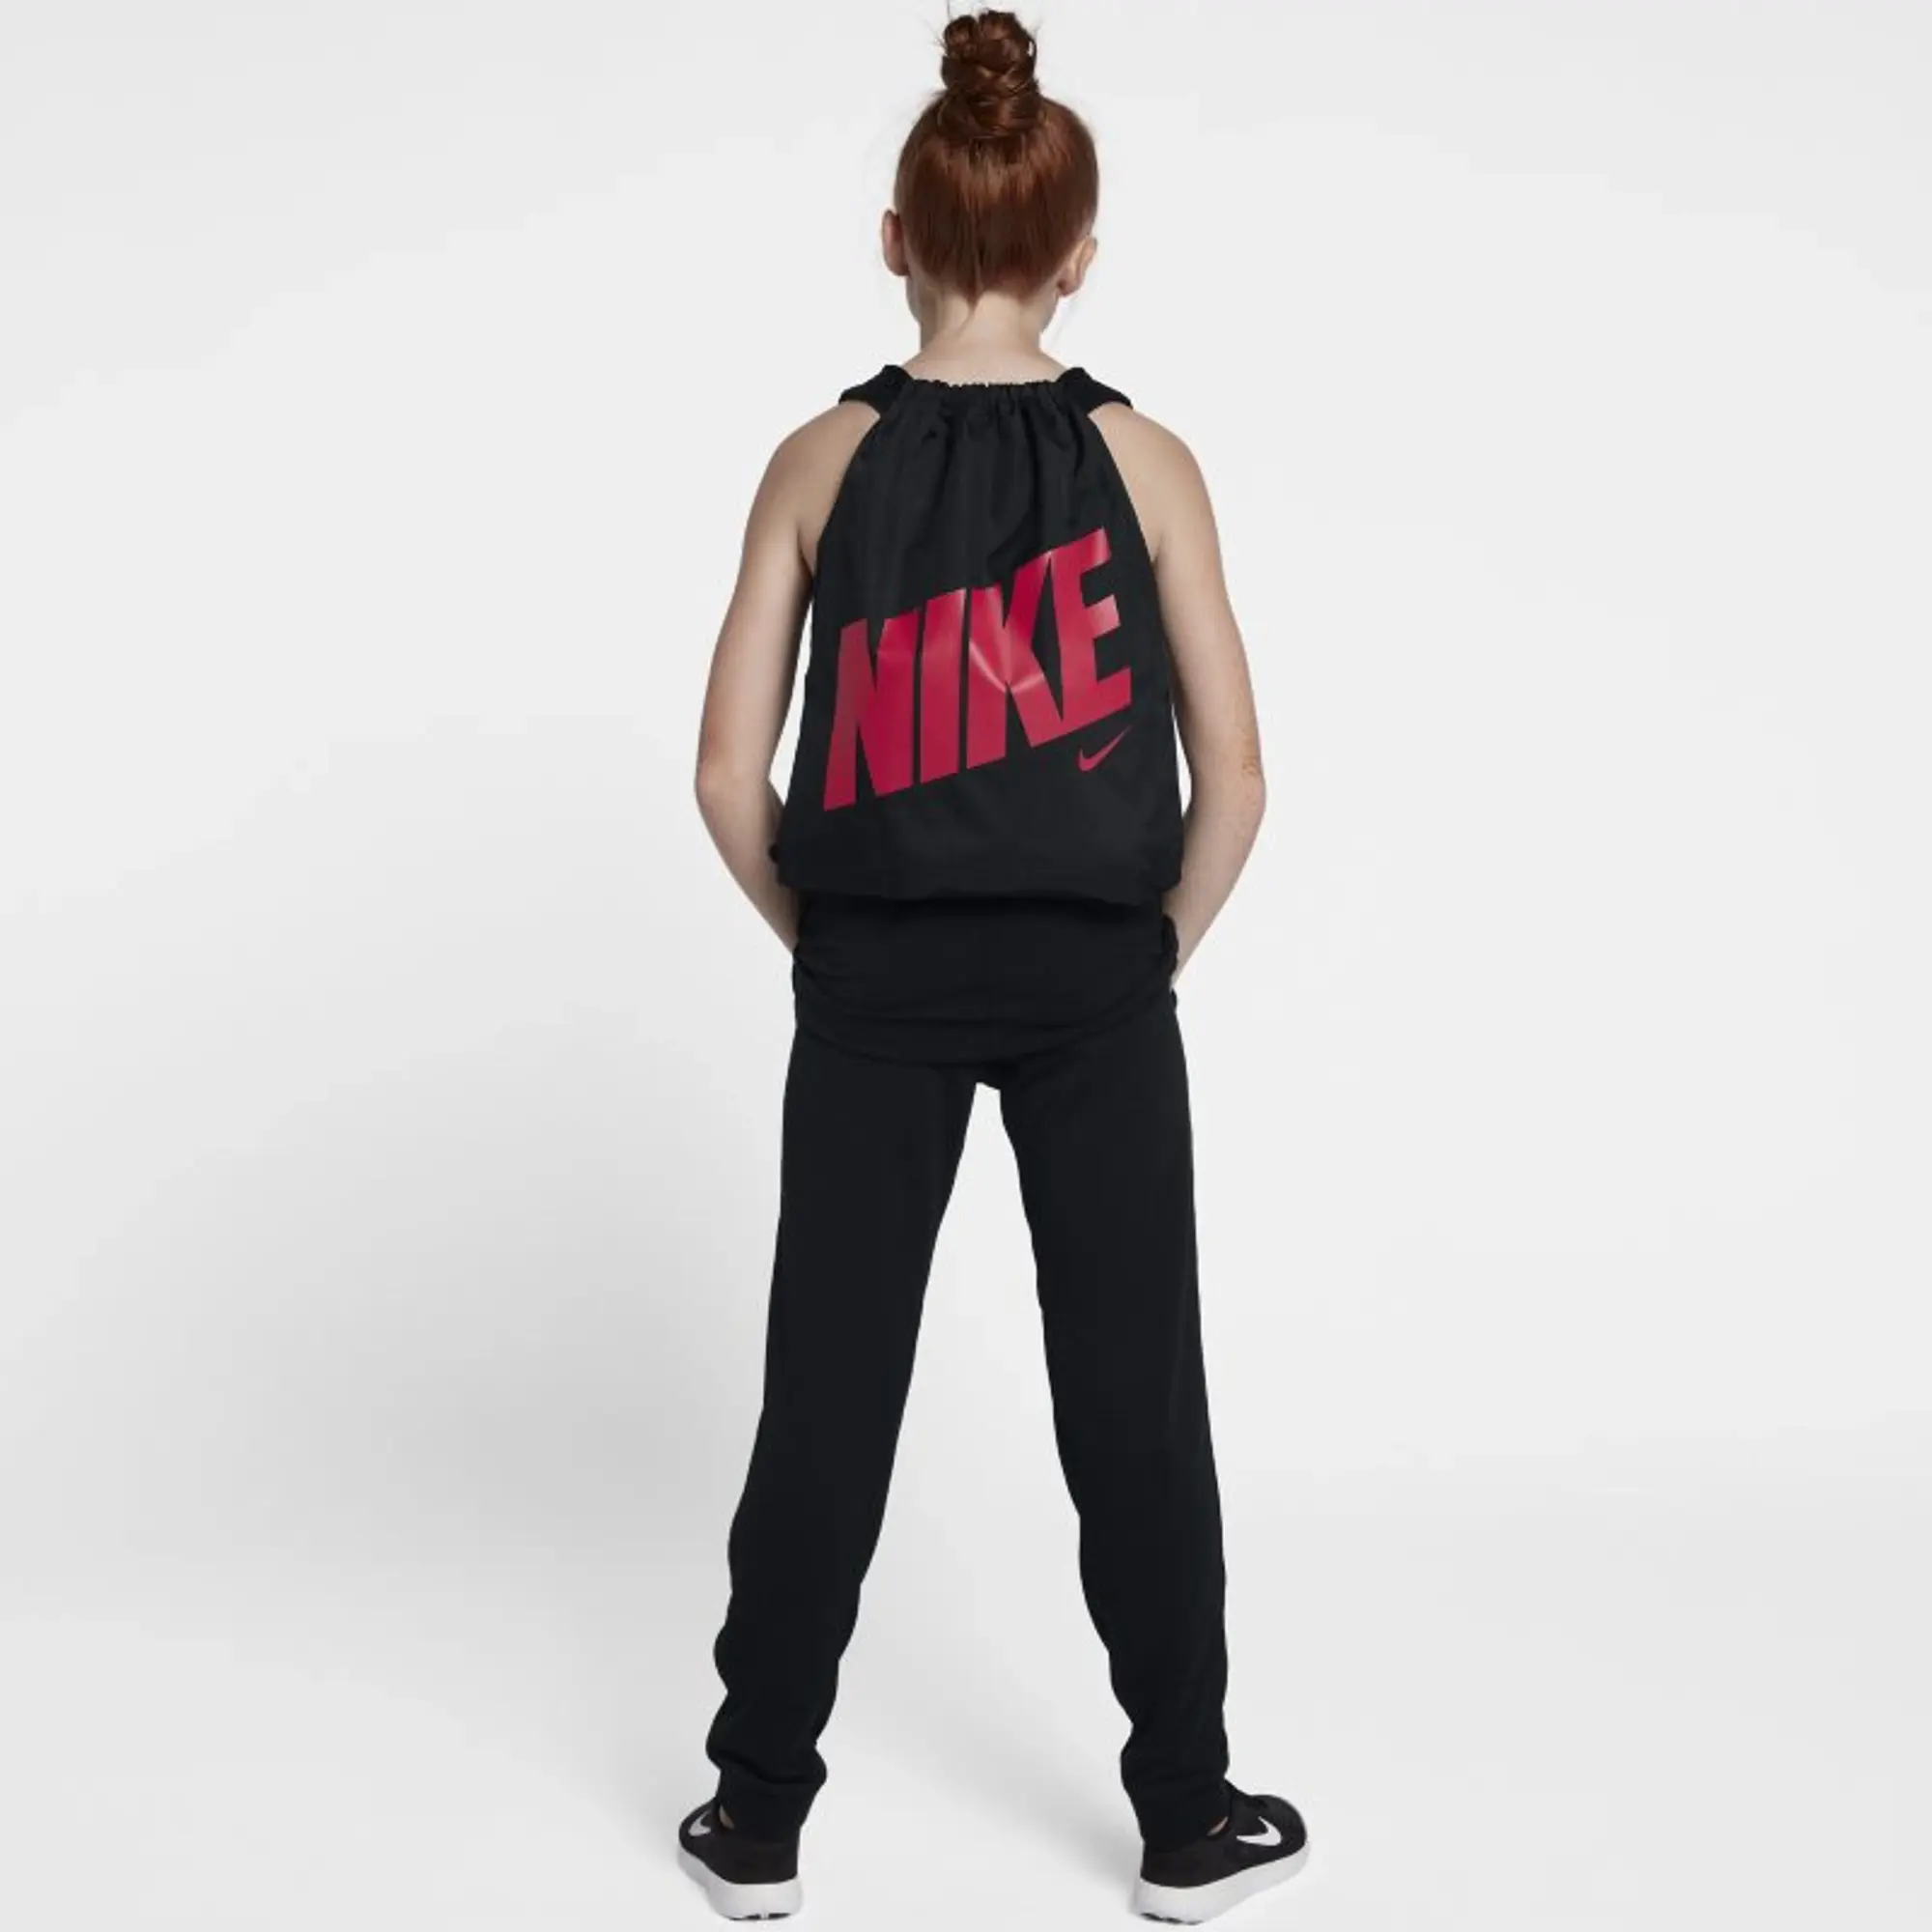 Nike Graphic Drawstring Bag  - Black